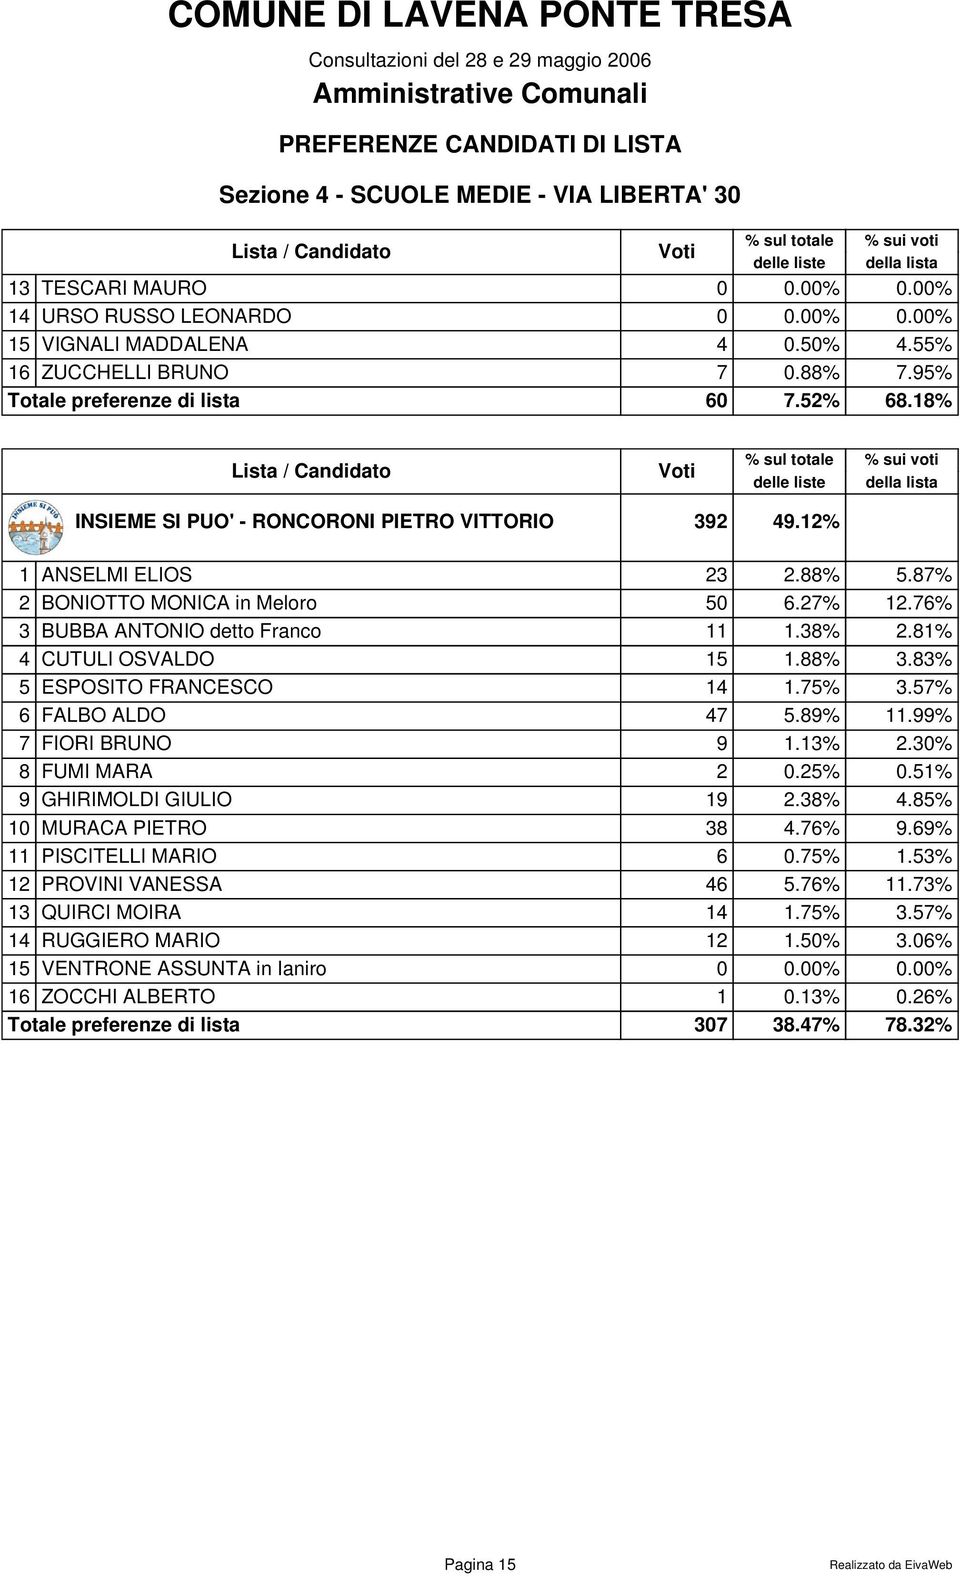 88% 3.83% 5 ESPOSITO FRANCESCO 14 1.75% 3.57% 6 FALBO ALDO 47 5.89% 11.99% 7 FIORI BRUNO 9 1.13% 2.30% 8 FUMI MARA 2 0.25% 0.51% 9 GHIRIMOLDI GIULIO 19 2.38% 4.85% 10 MURACA PIETRO 38 4.76% 9.